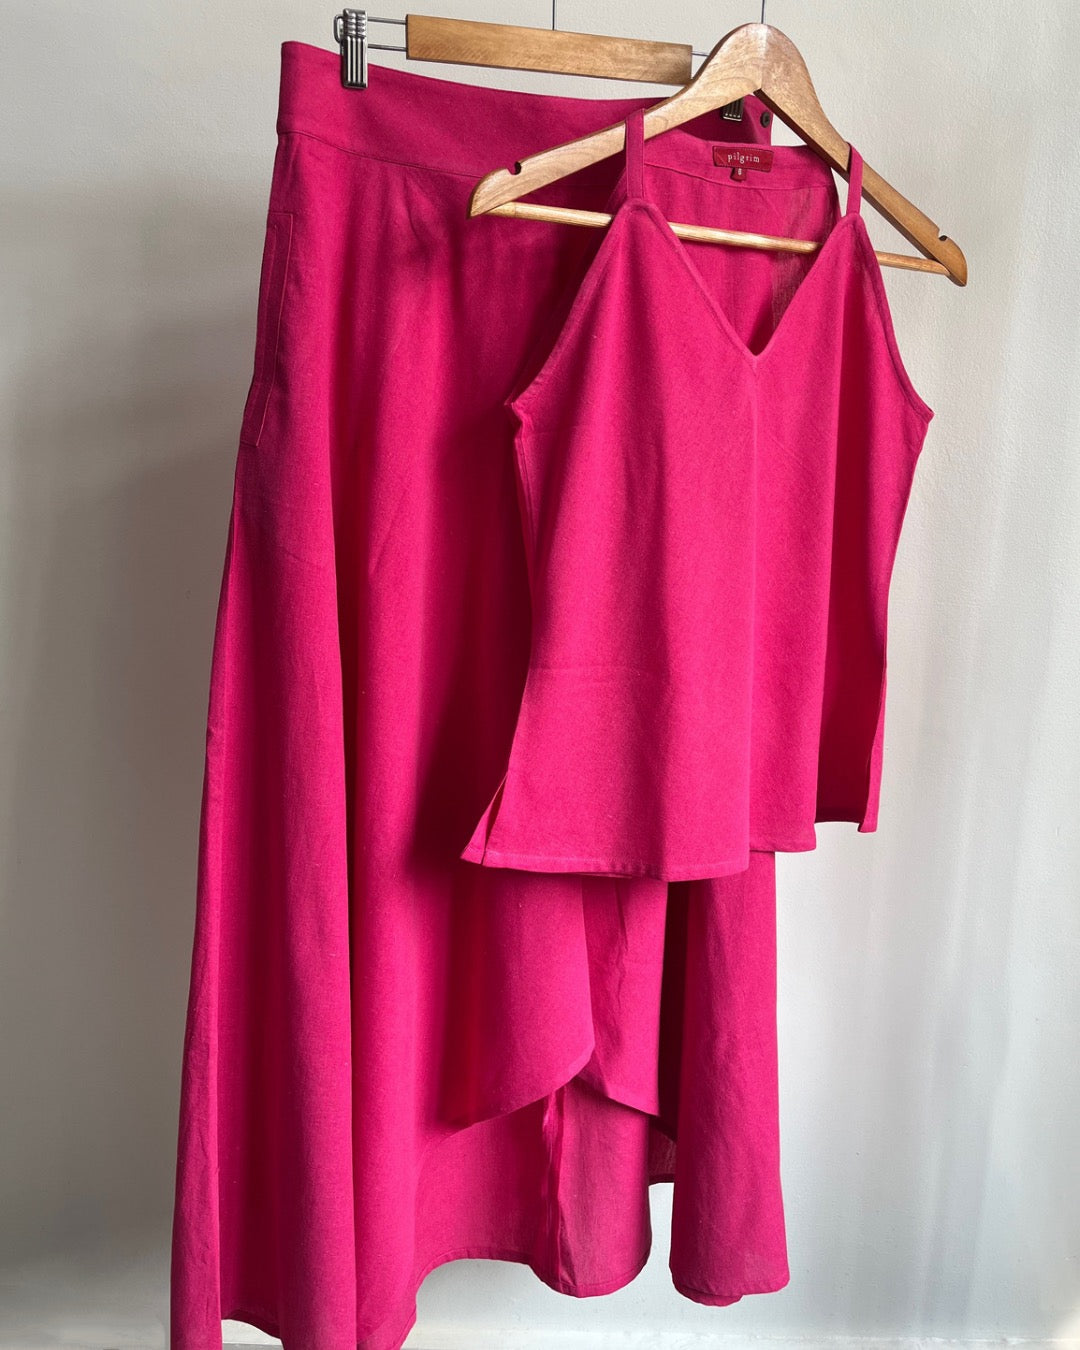 Adhira Skirt - Pink Cotton